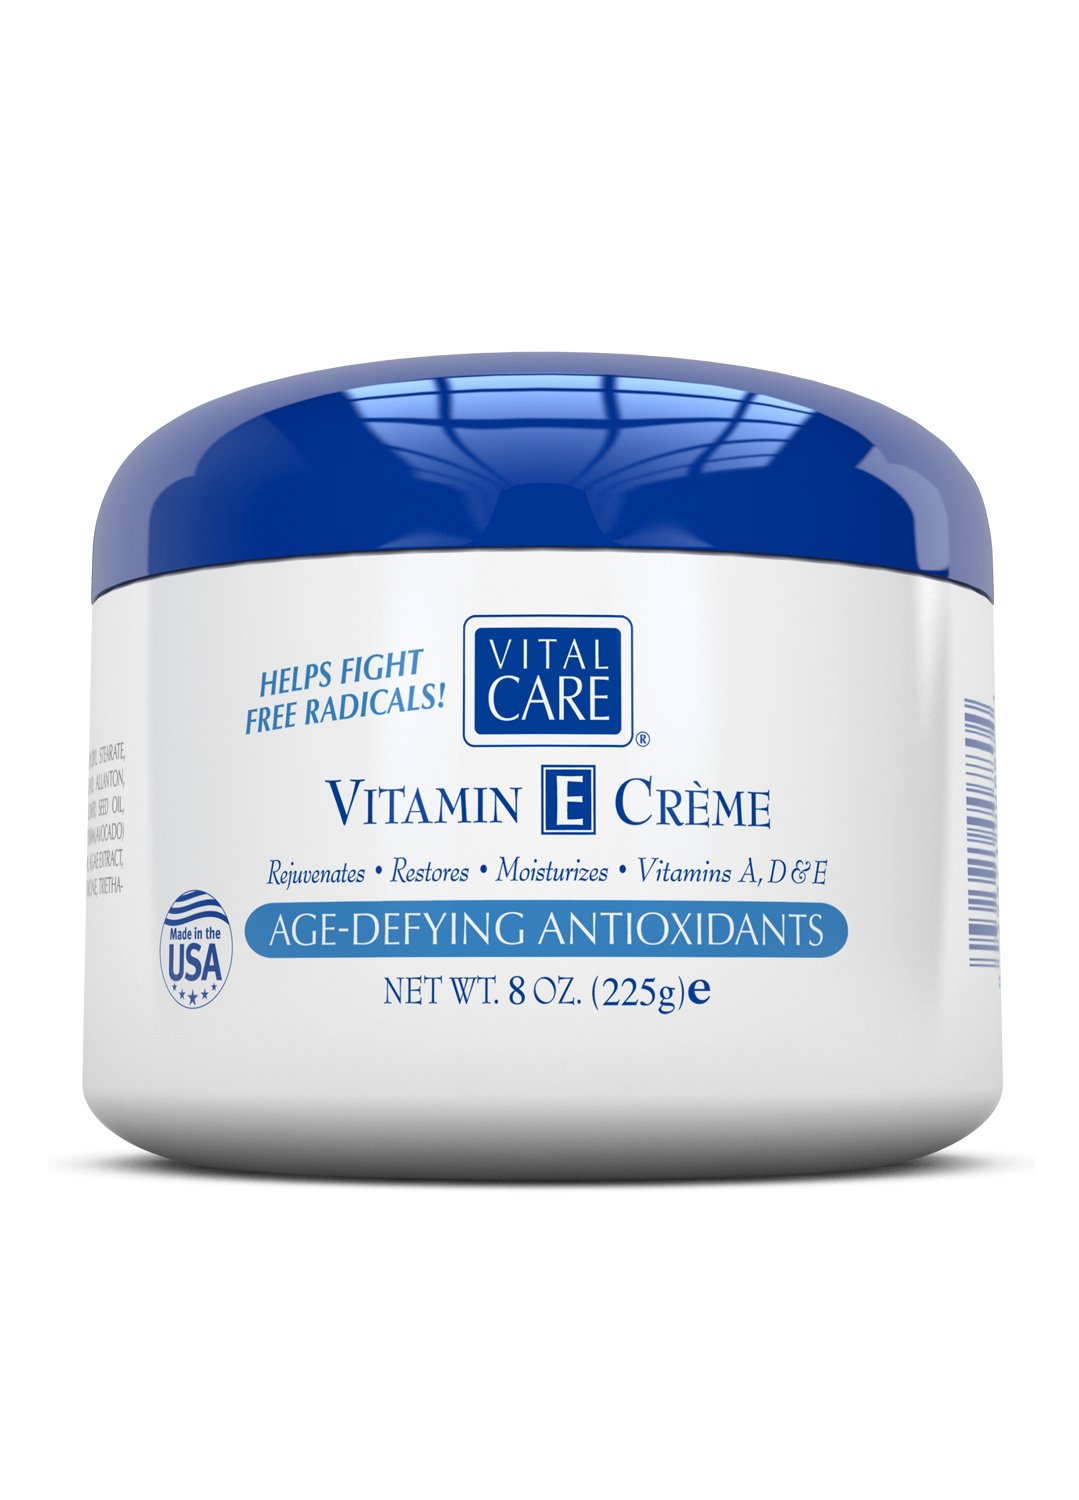 Tổng quan về vitamin e creme và các ứng dụng trong chăm sóc da